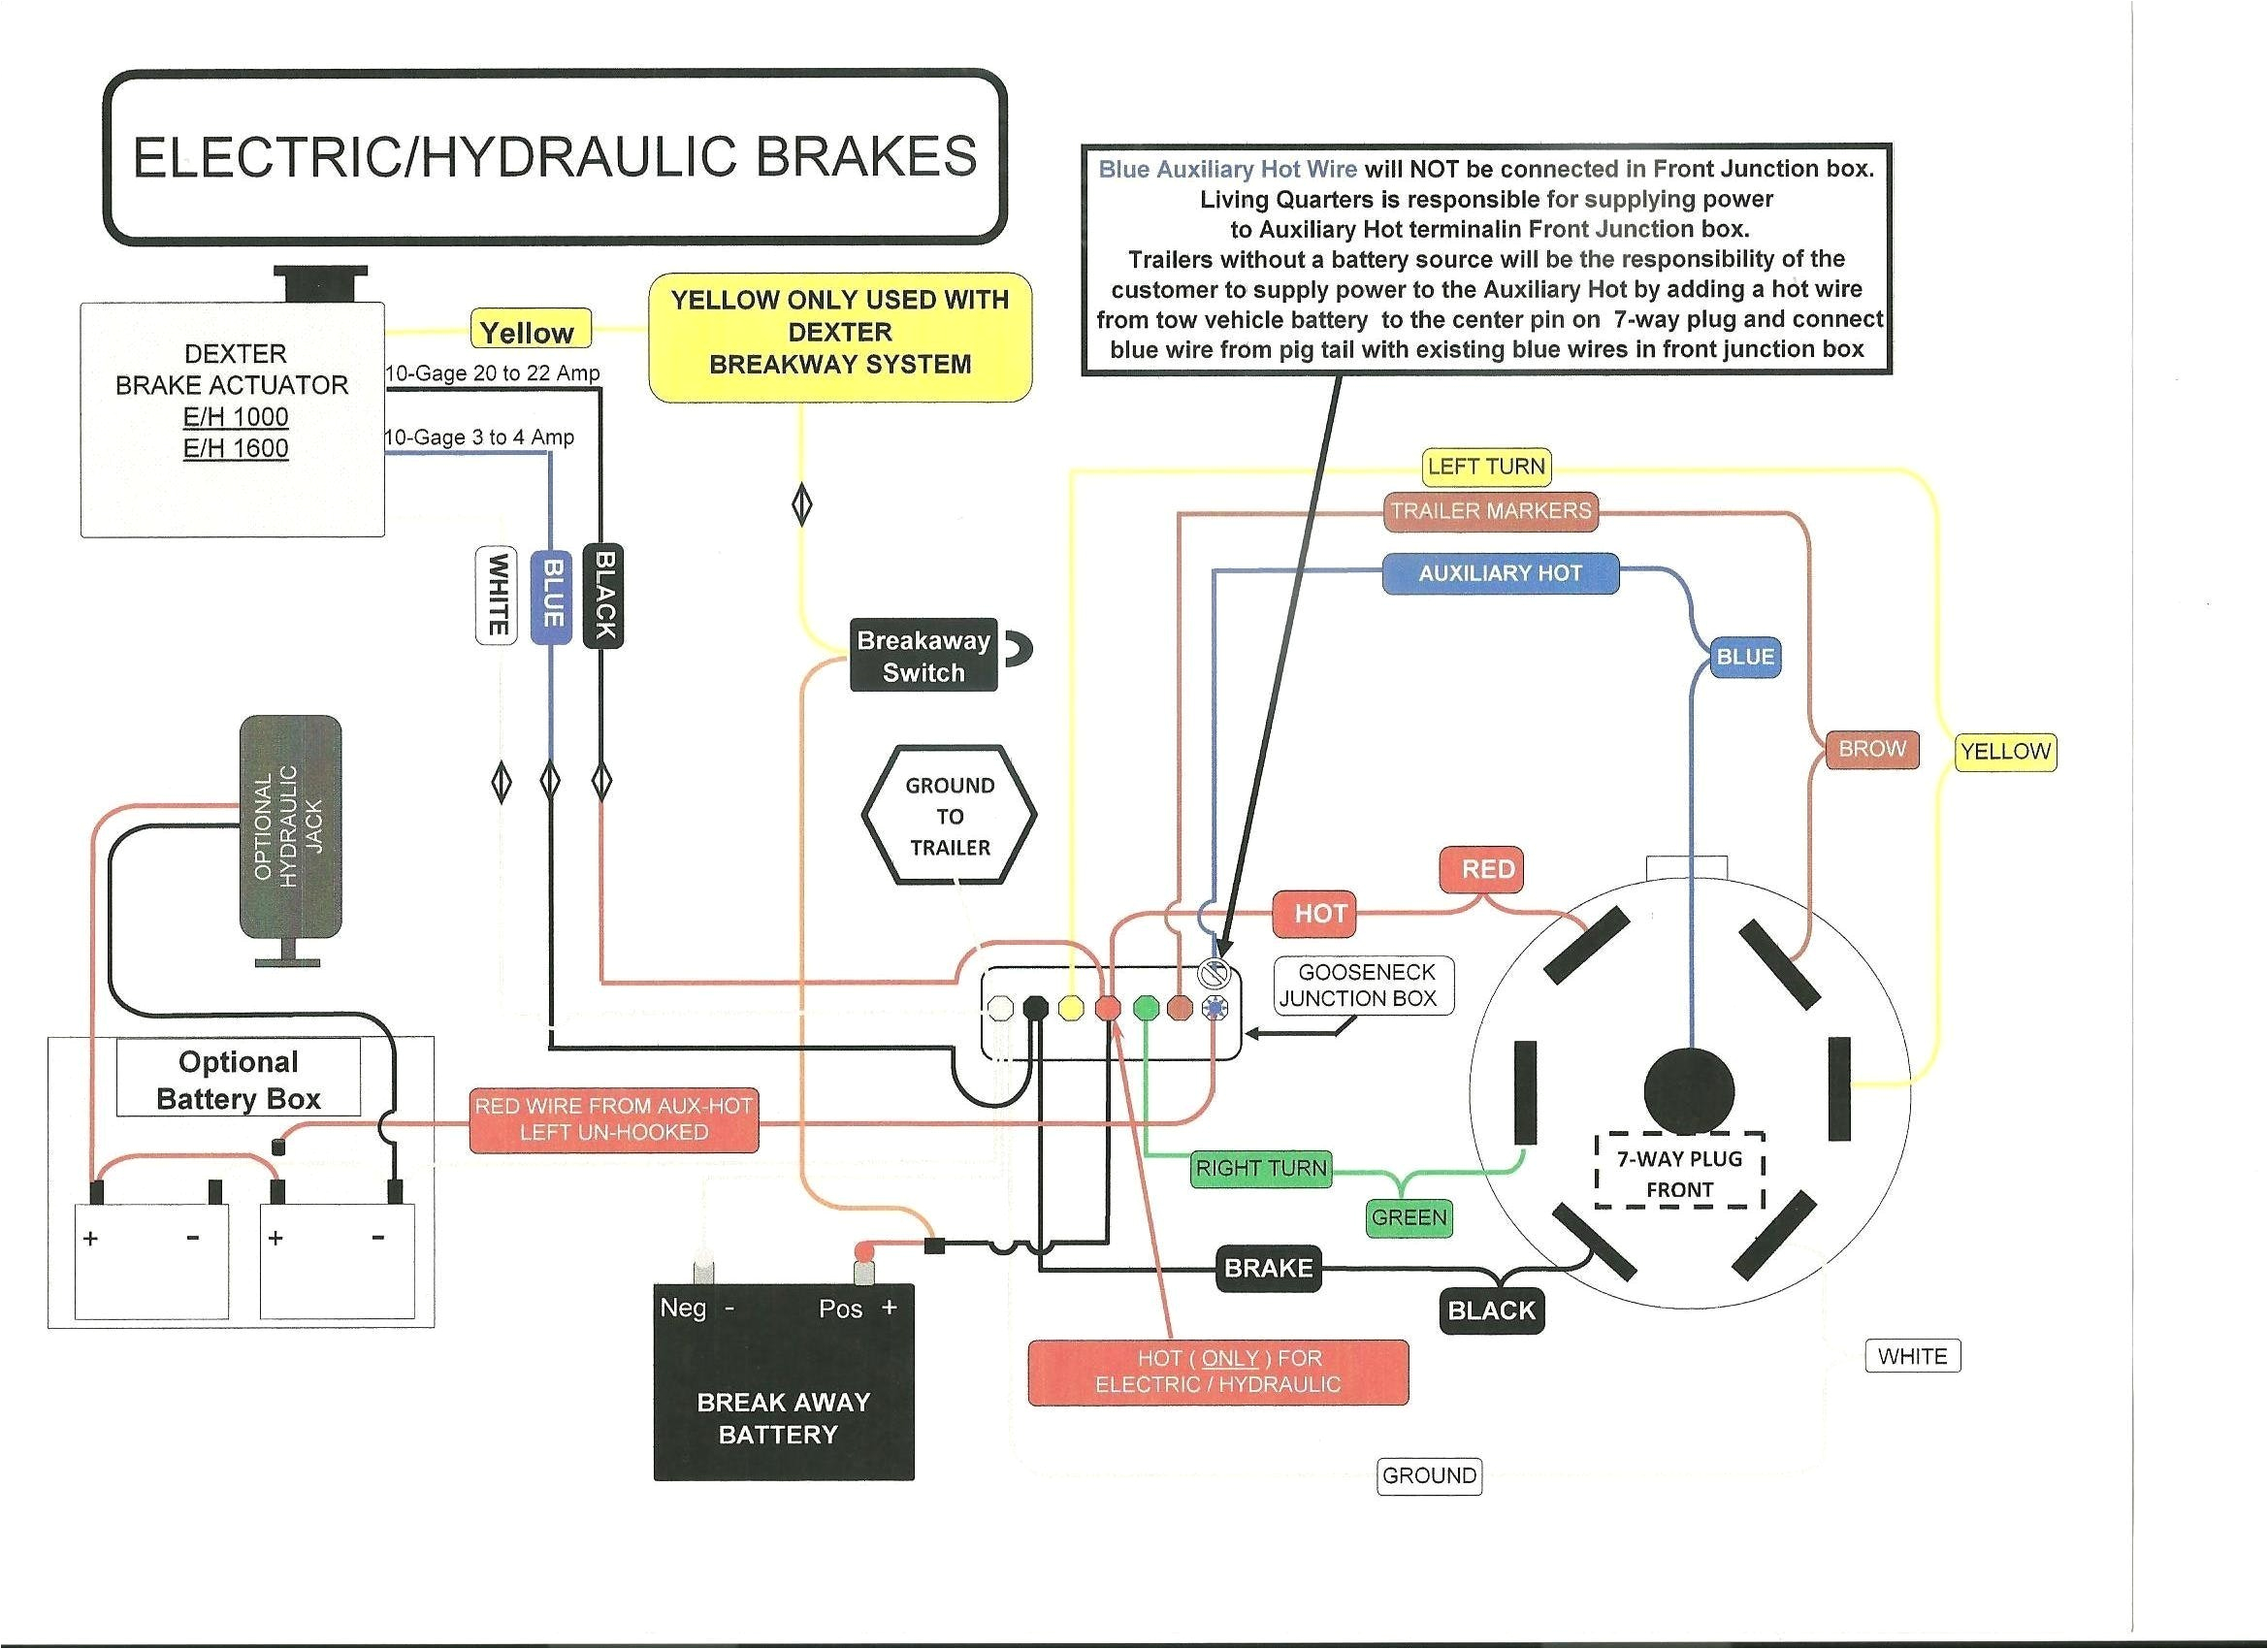 ke breakaway wiring diagram wiring diagrams konsult curt breakaway switch wiring diagram data diagram schematic curt